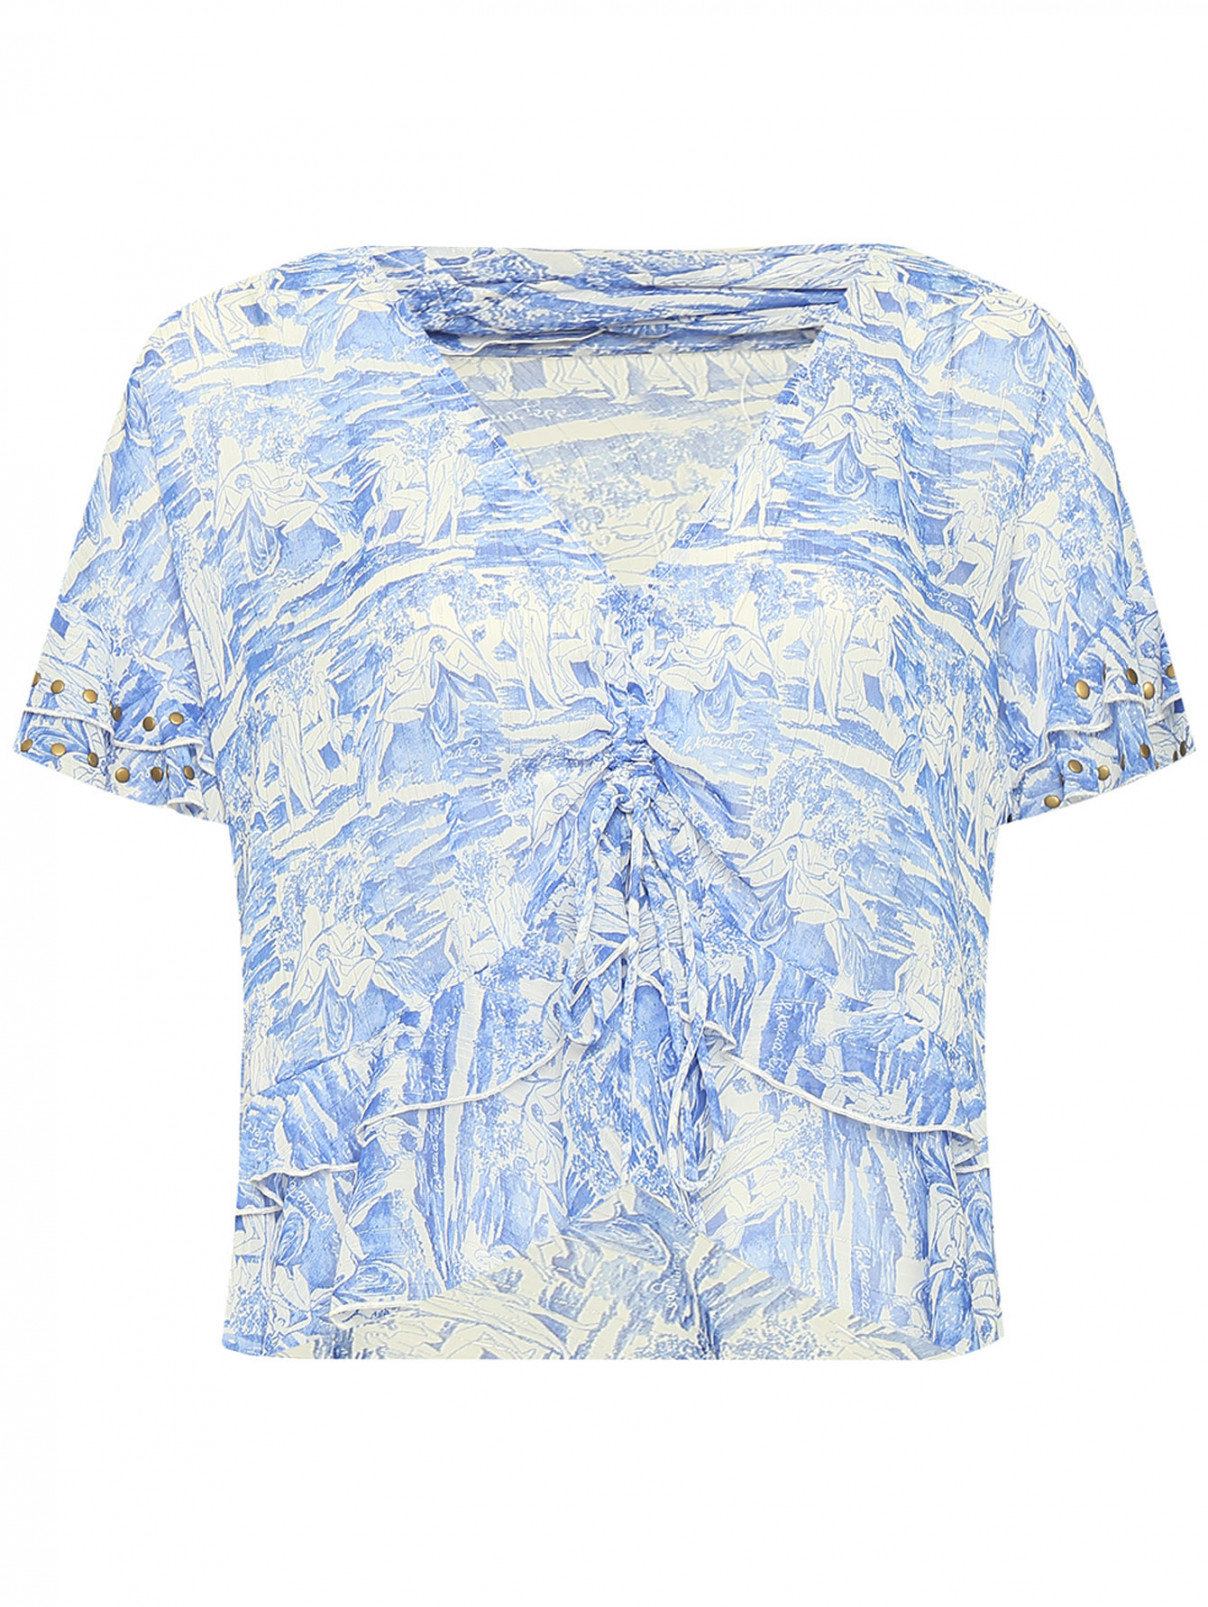 Полупрозрачная блуза с воланами Patrizia Pepe  –  Общий вид  – Цвет:  Синий